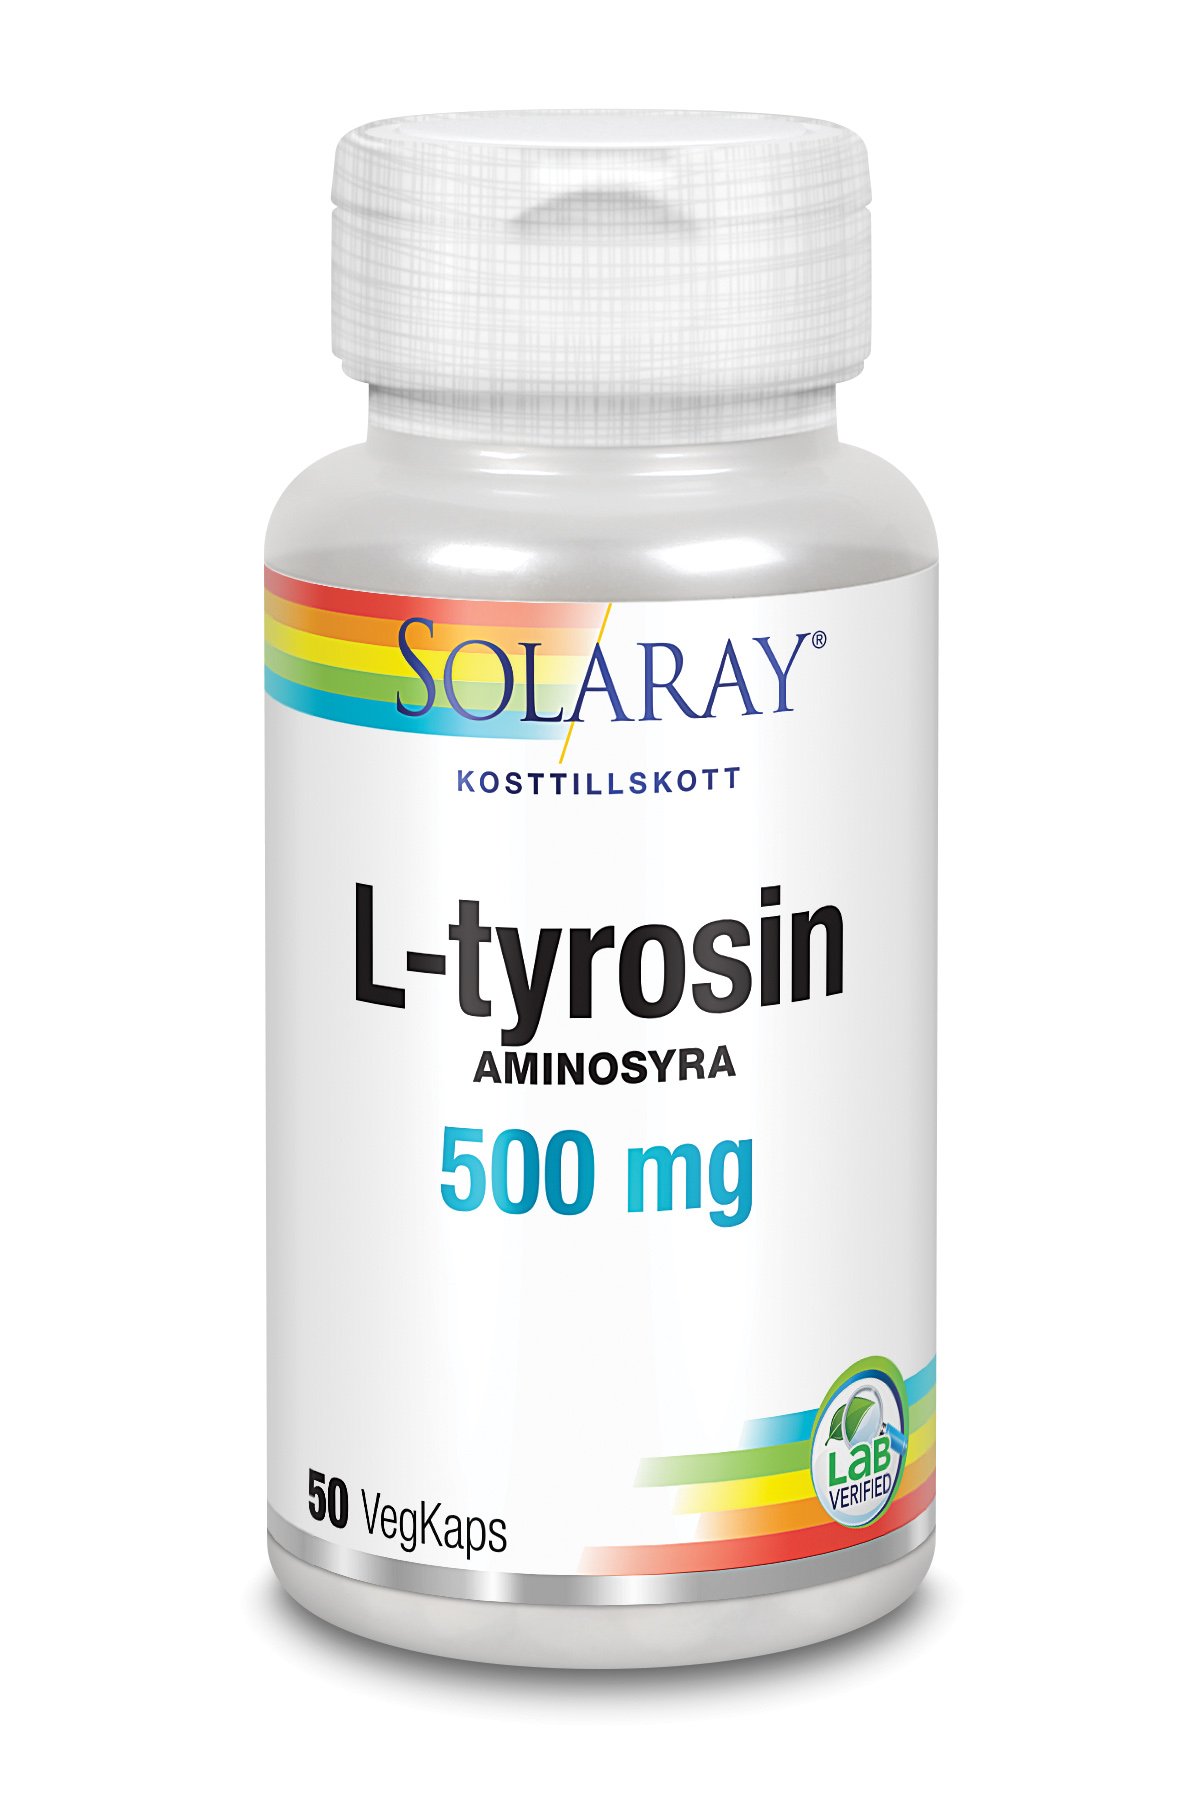 Solaray L-tyrosin 50 kapslar